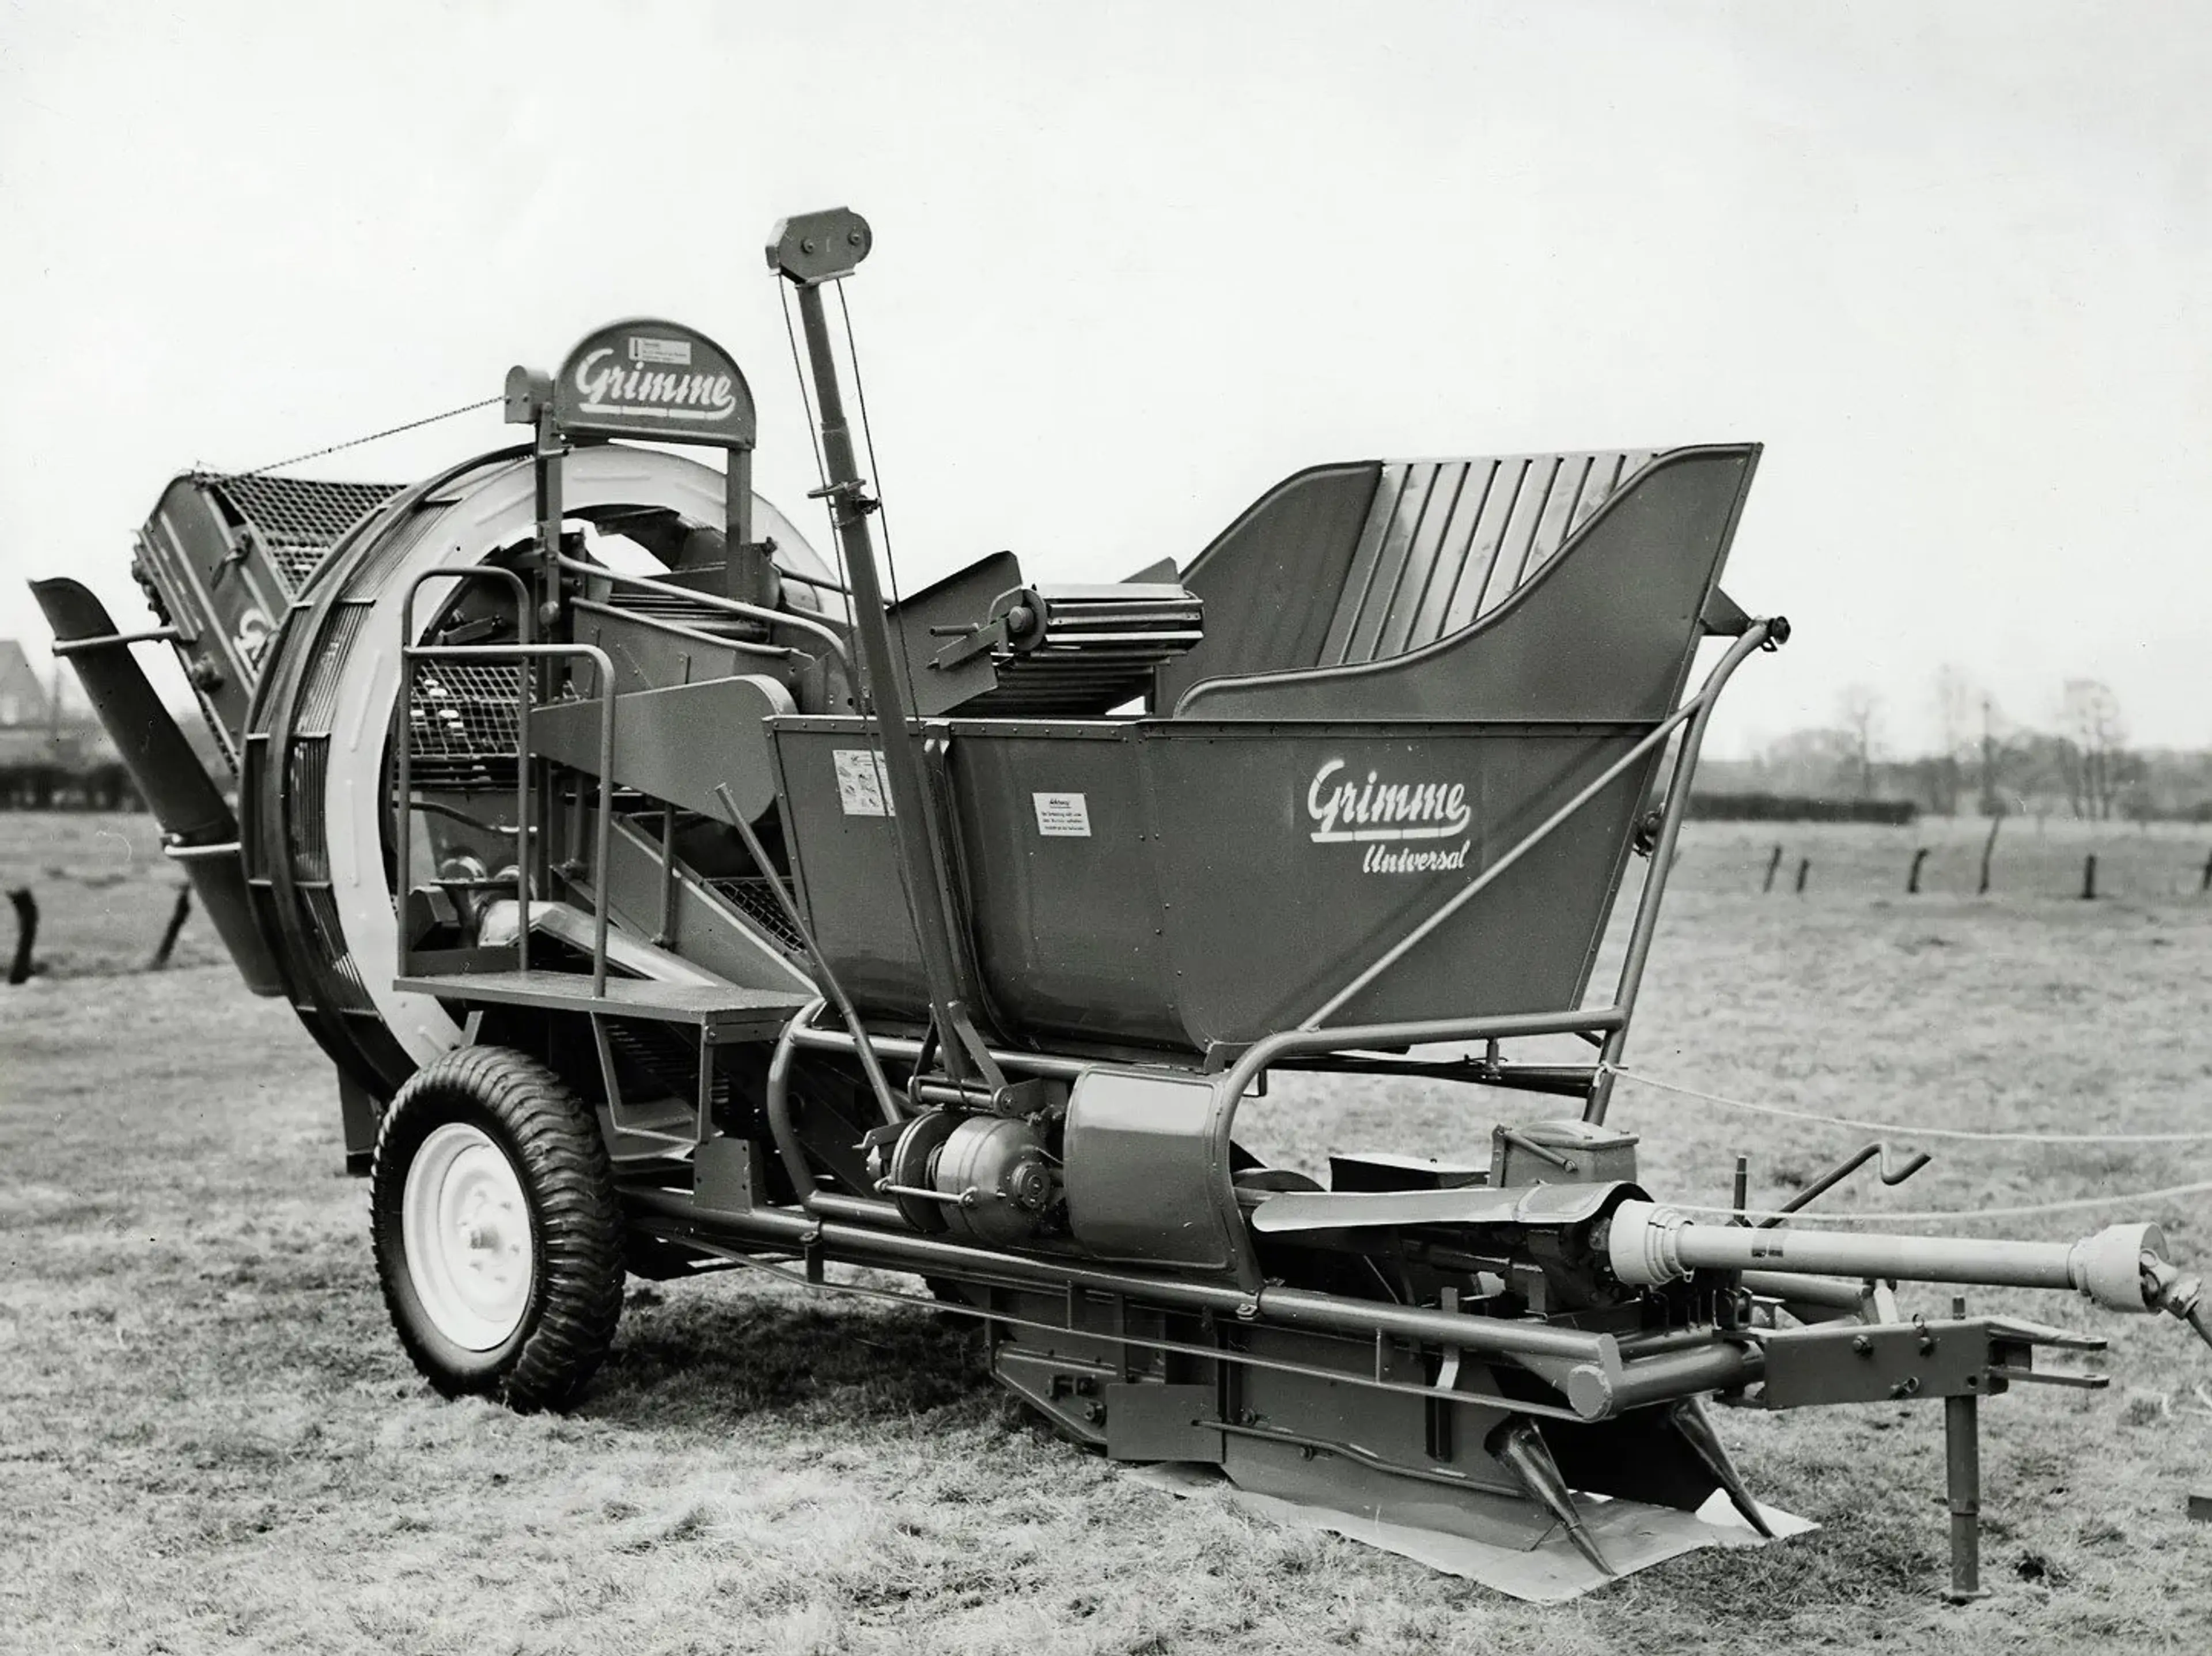 Imagen histórica de una cosechadora de patatas arrastrada, el modelo GRIMME Universal.